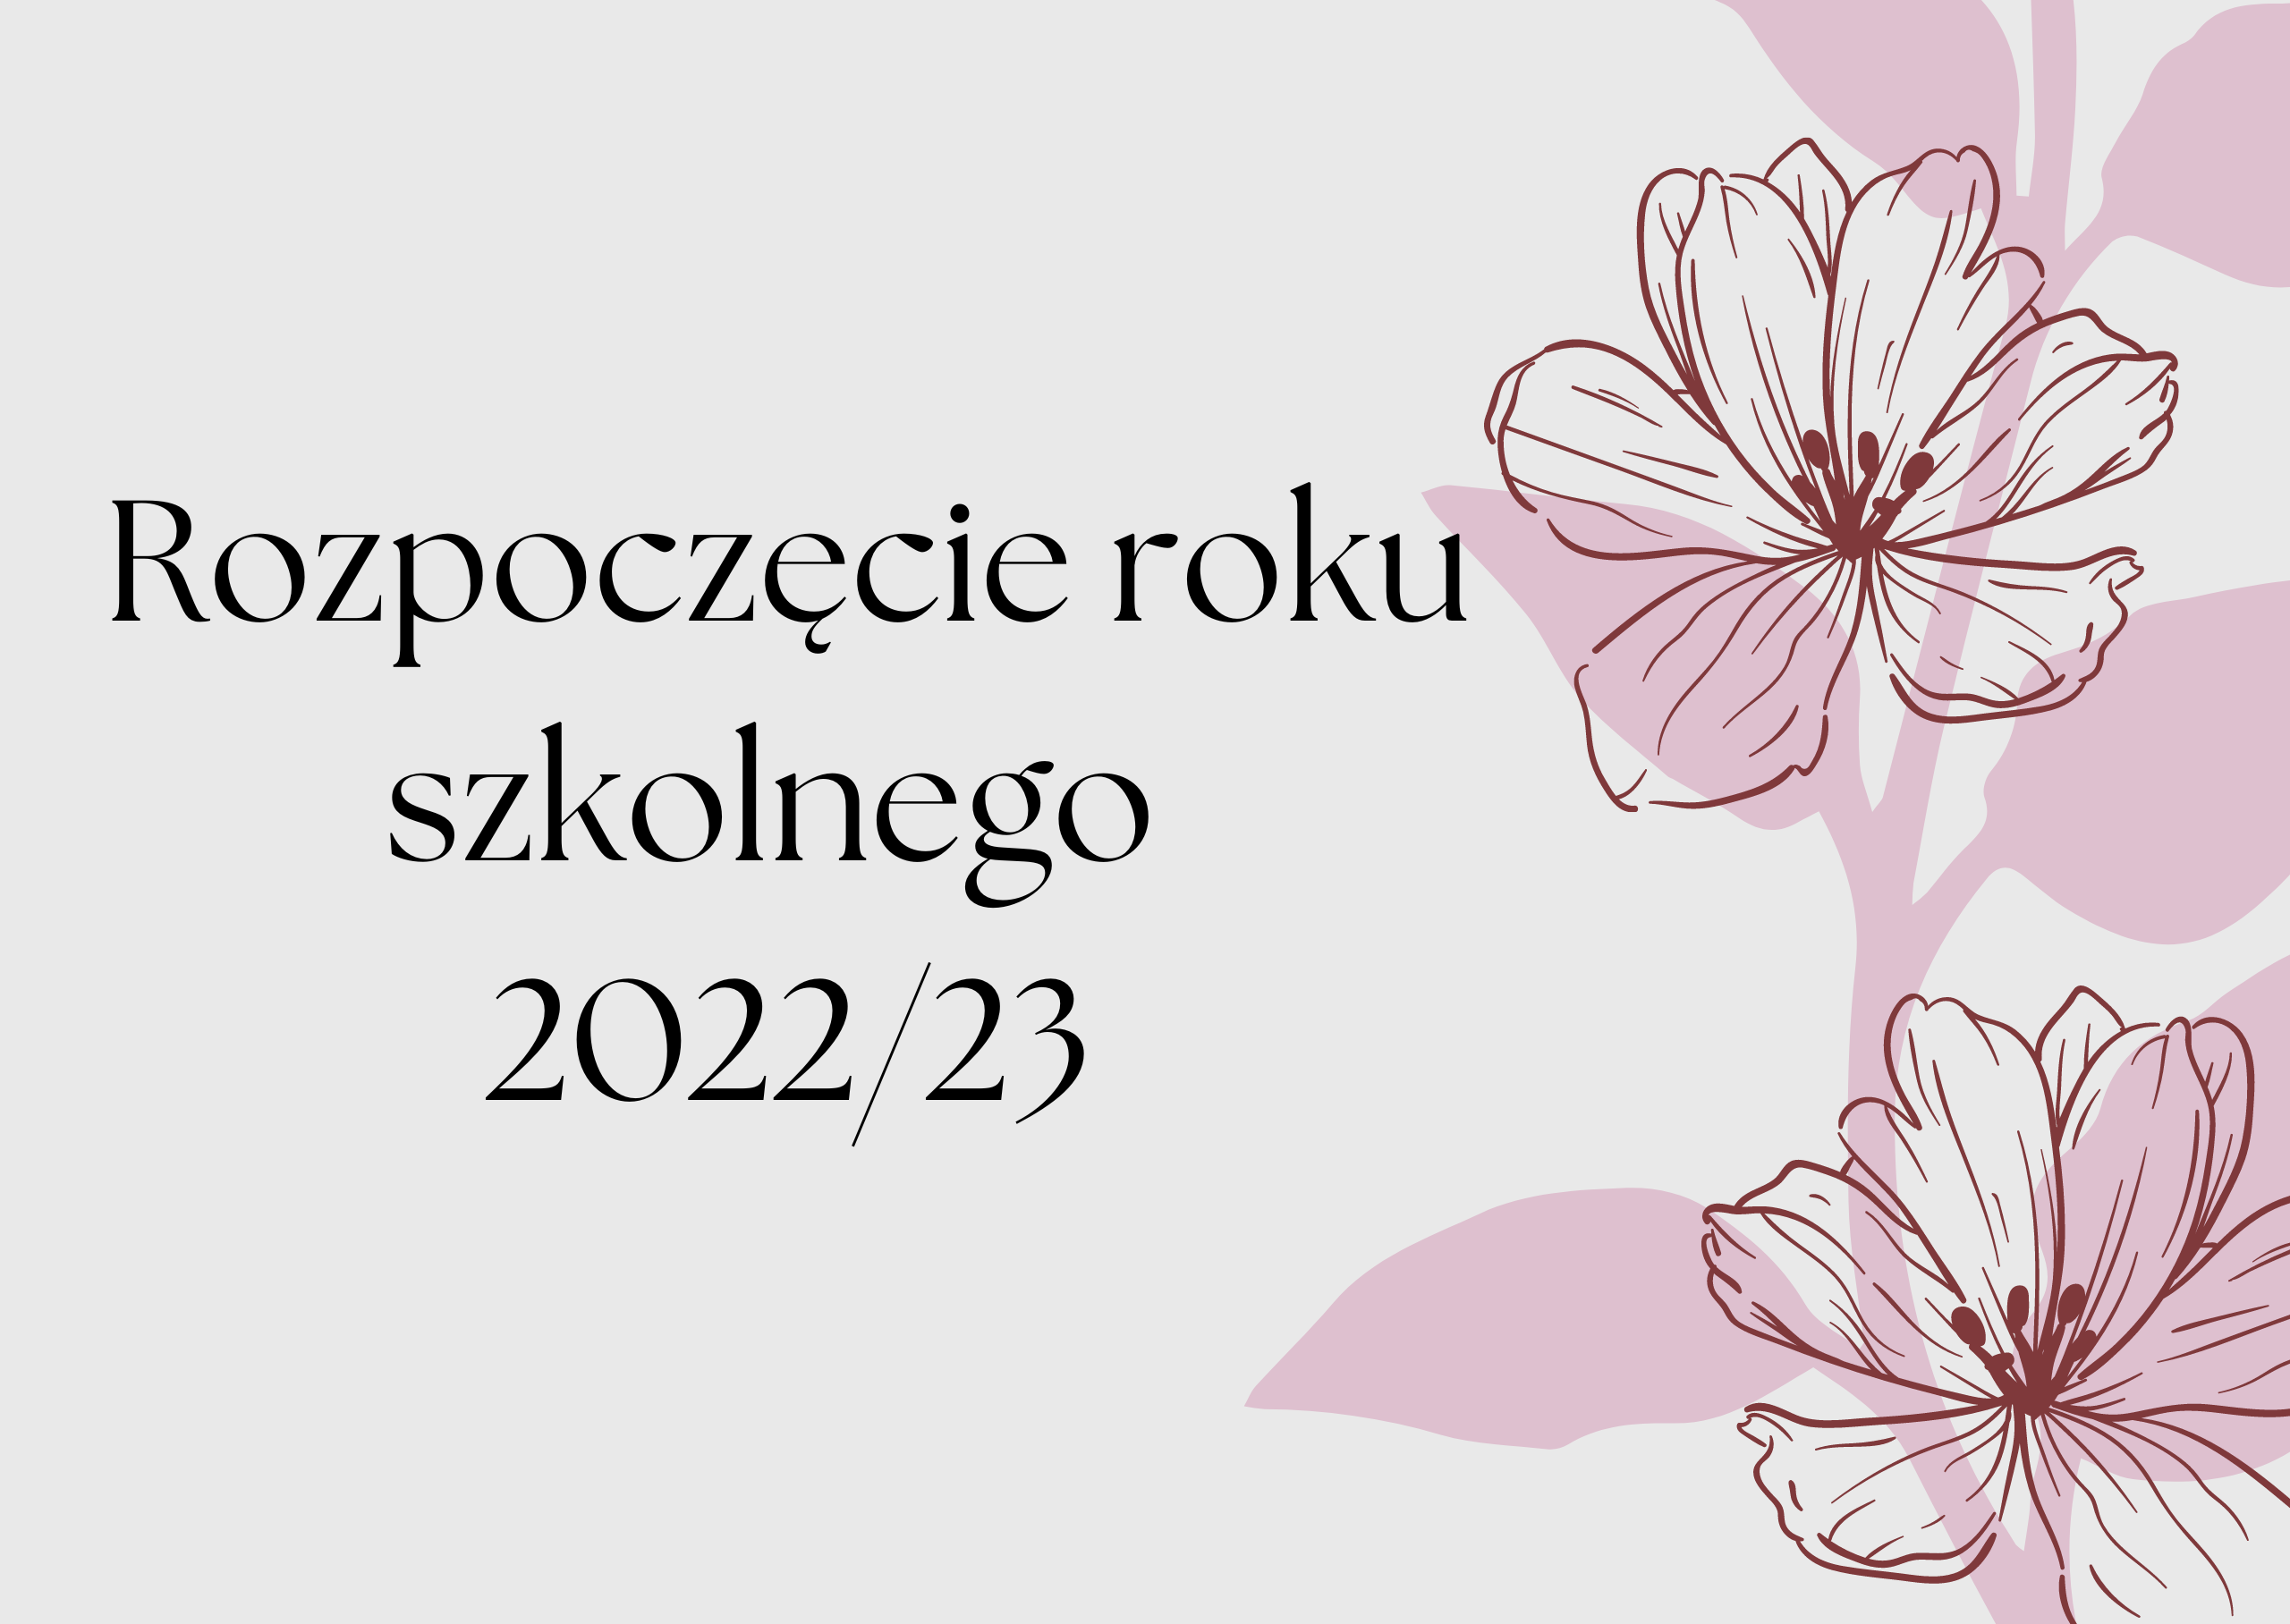 Rozpoczęcie roku szkolnego 202223